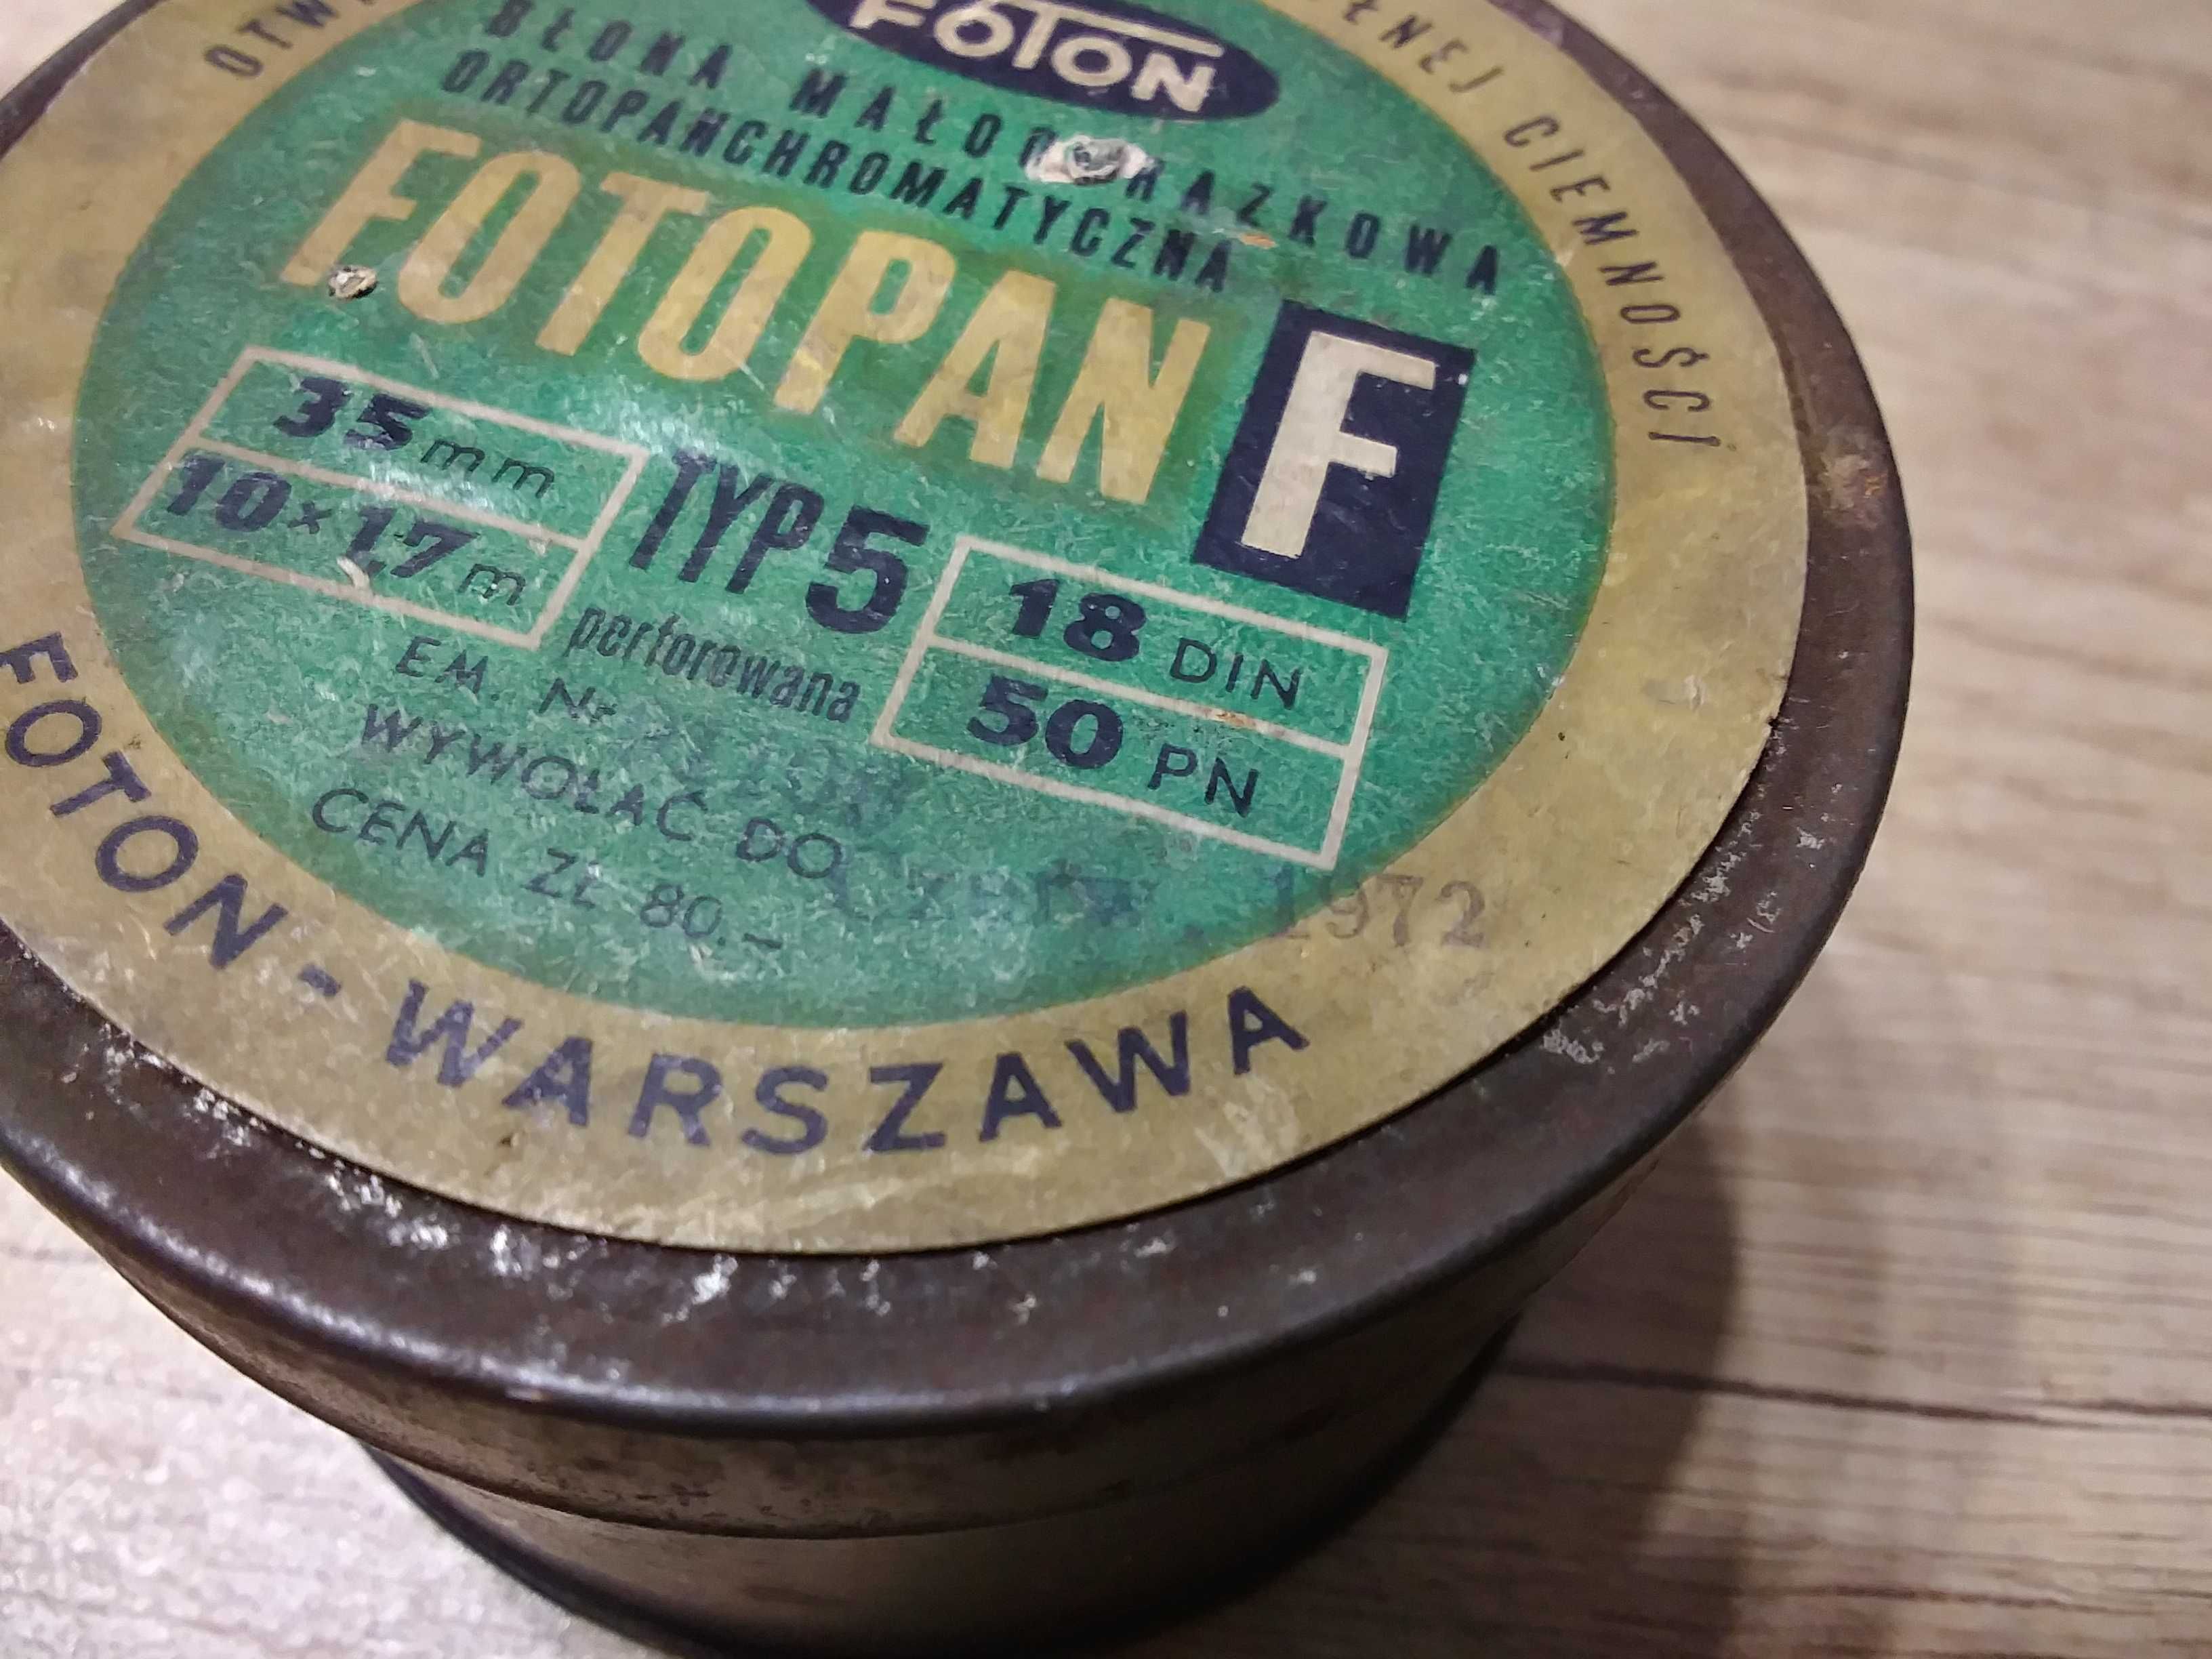 Stare metalowe pudełko z PRL Foton Warszawa metalowy pojemnik